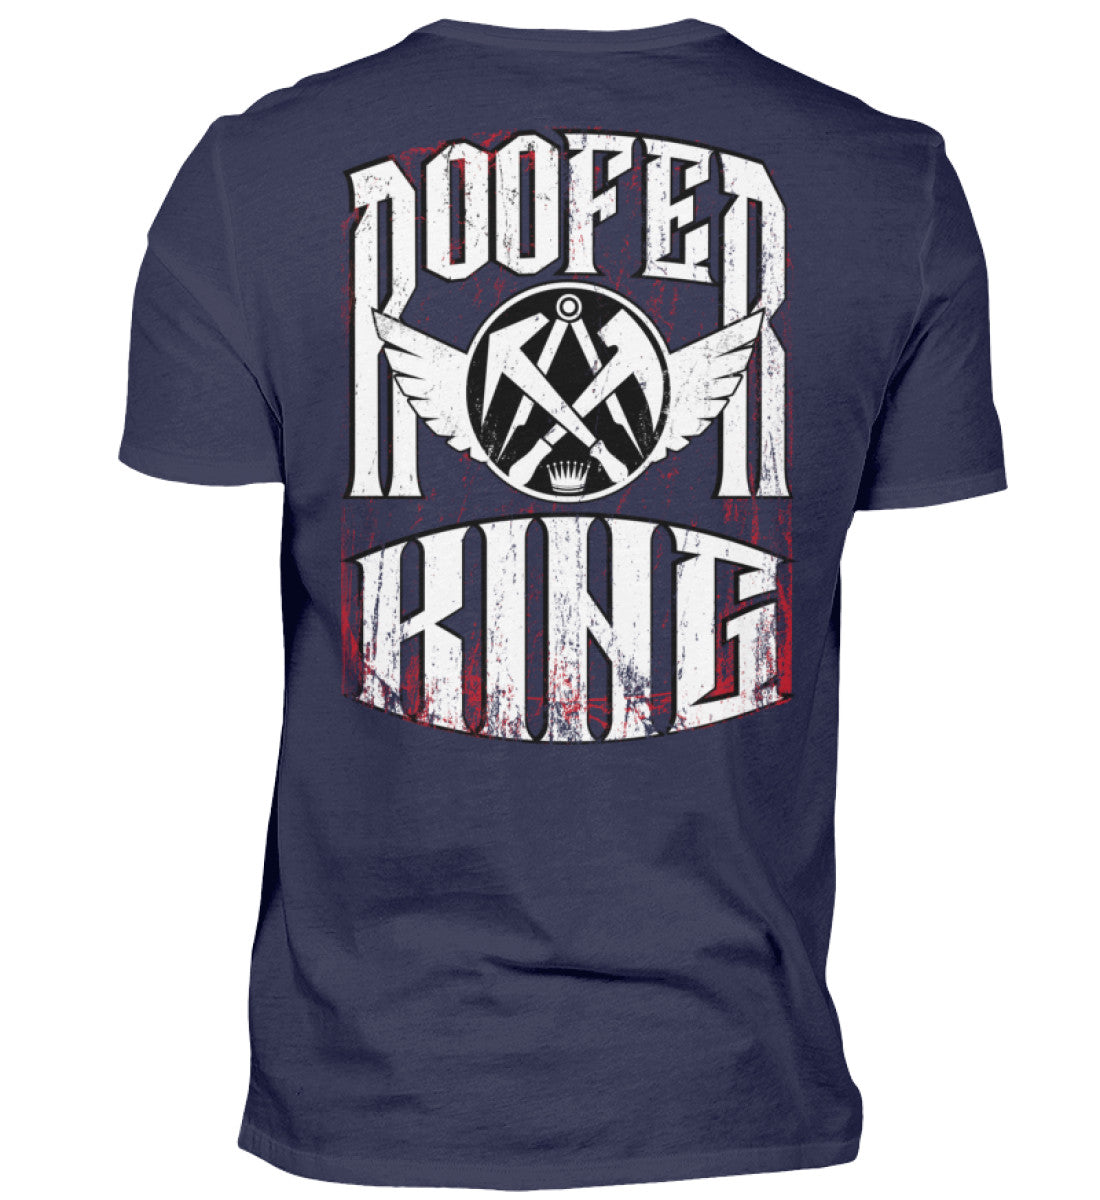 Dachdecker T-Shirt / Rooferking Version 2.0 €24.95 Rooferking